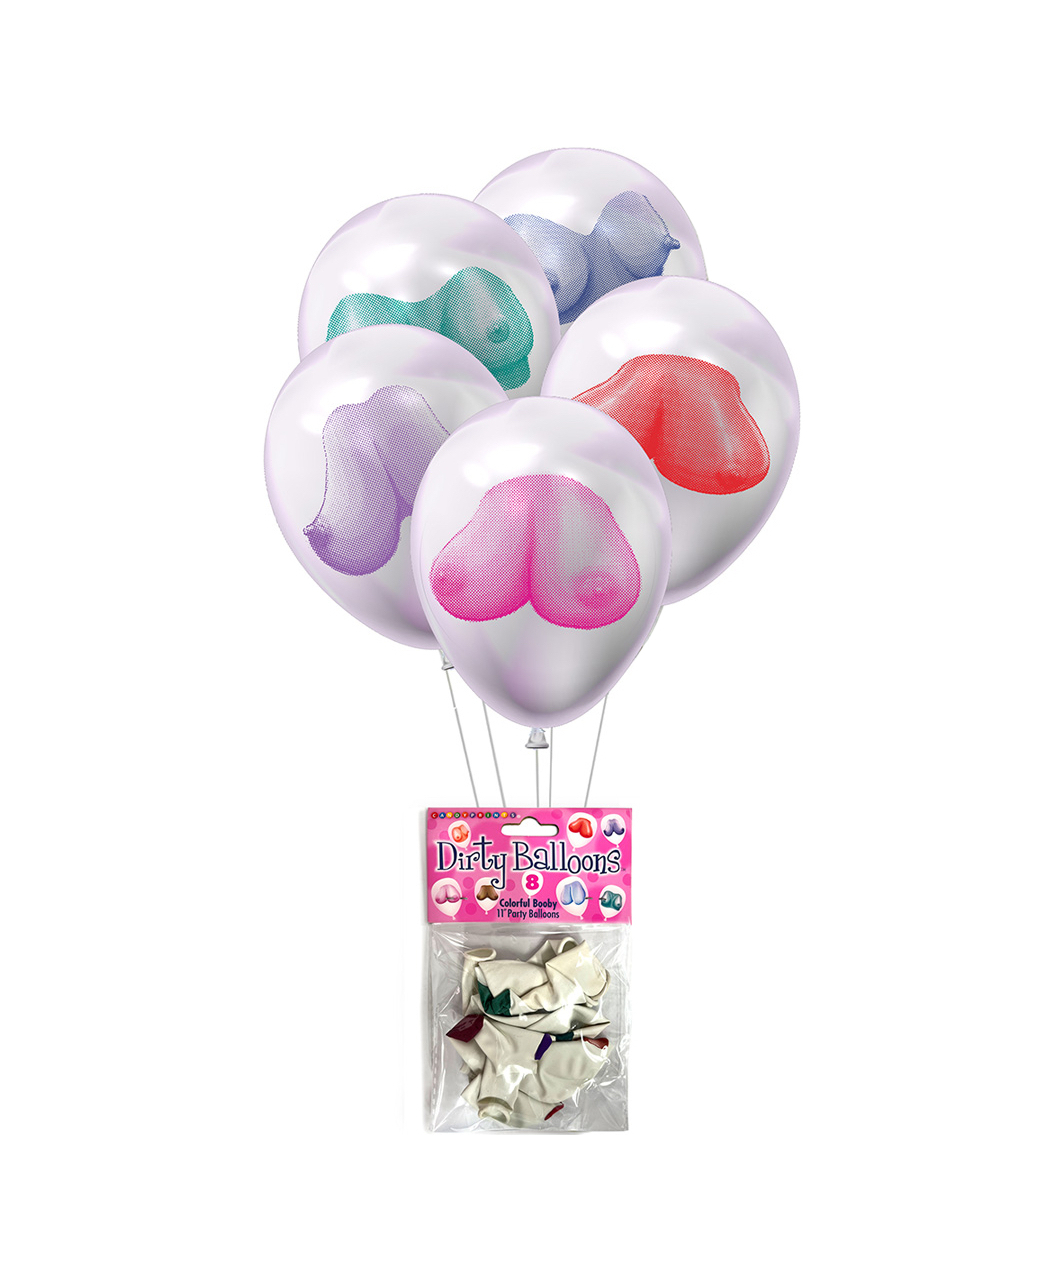 Little Genie Dirty Balloons Booby надувные шары (8 шт.)